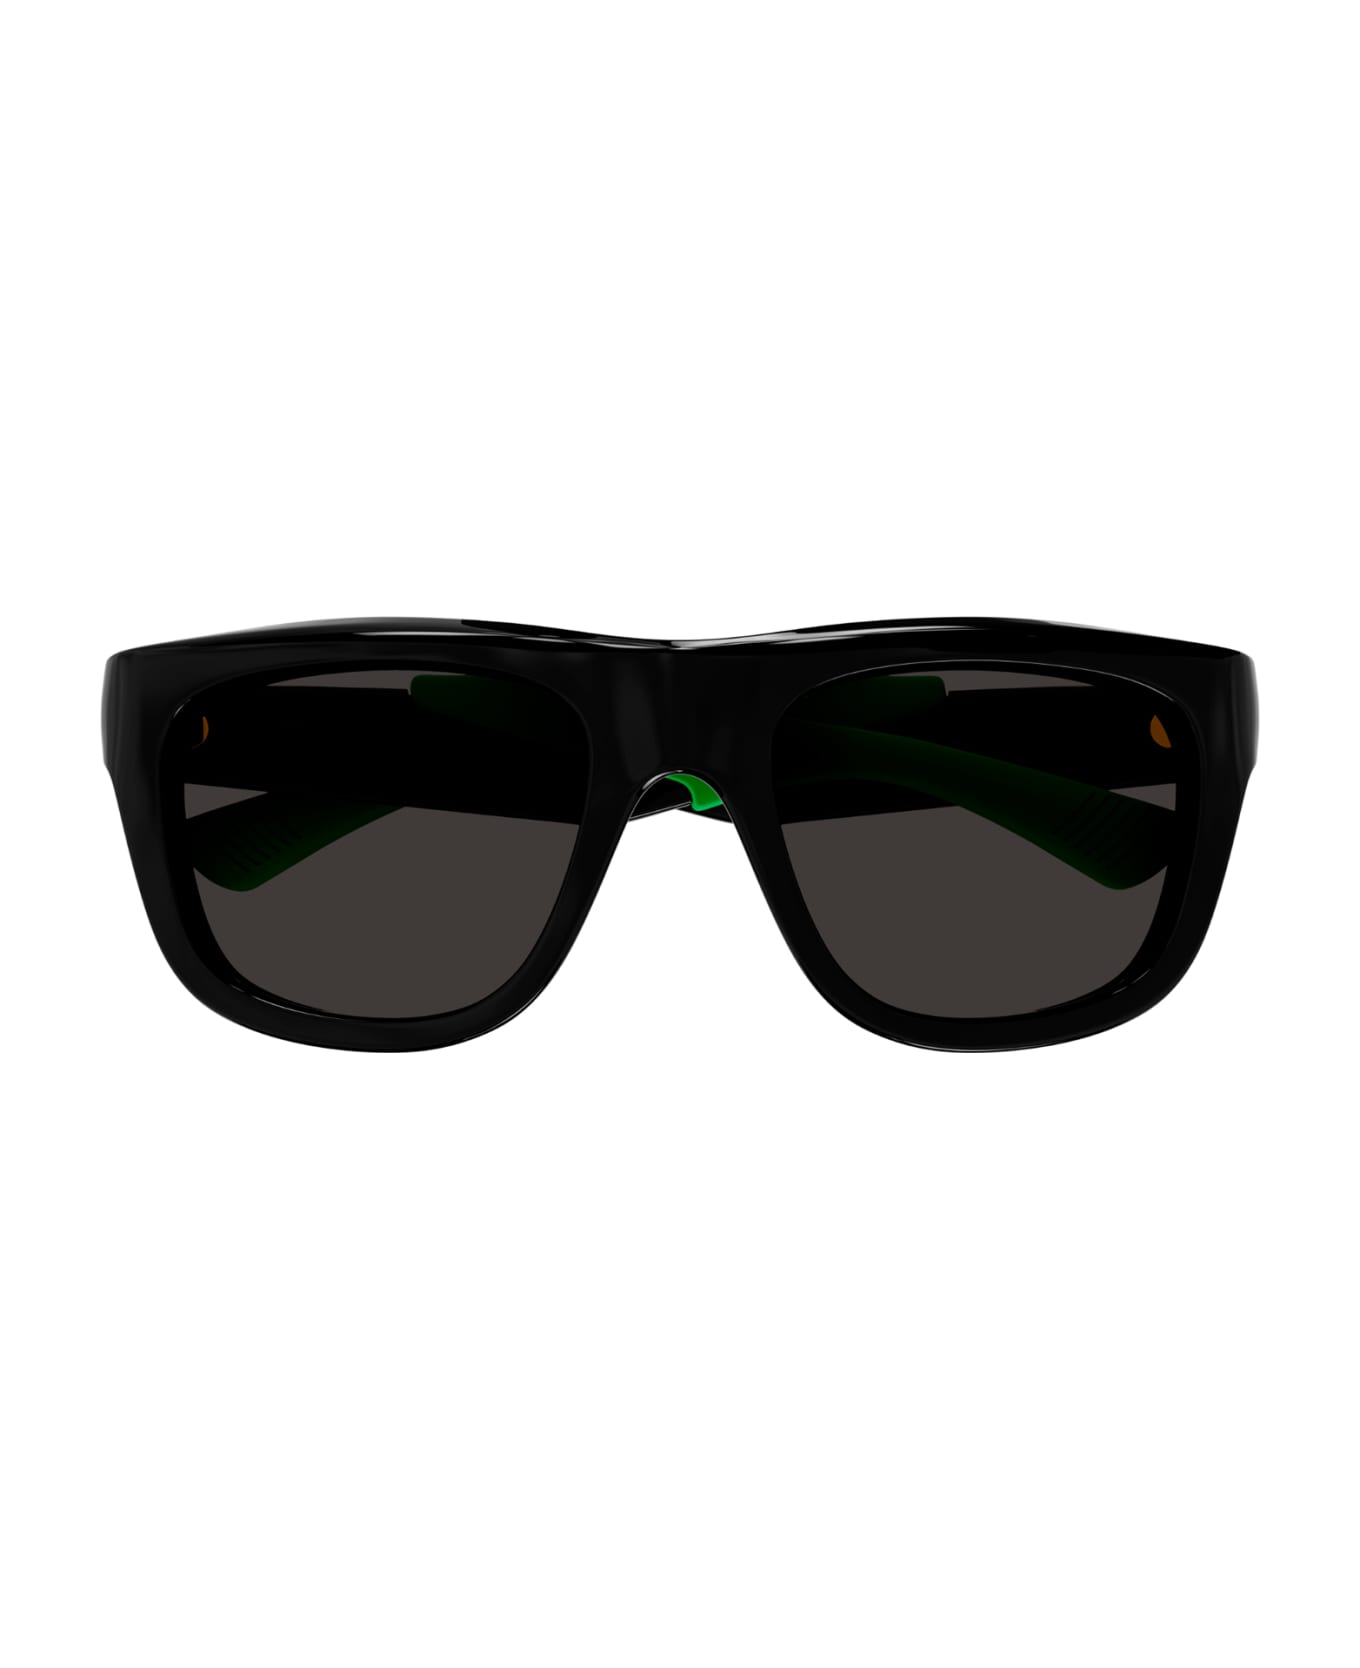 Bottega Veneta Eyewear 1f9z4li0a - sunglasses Ah Dang